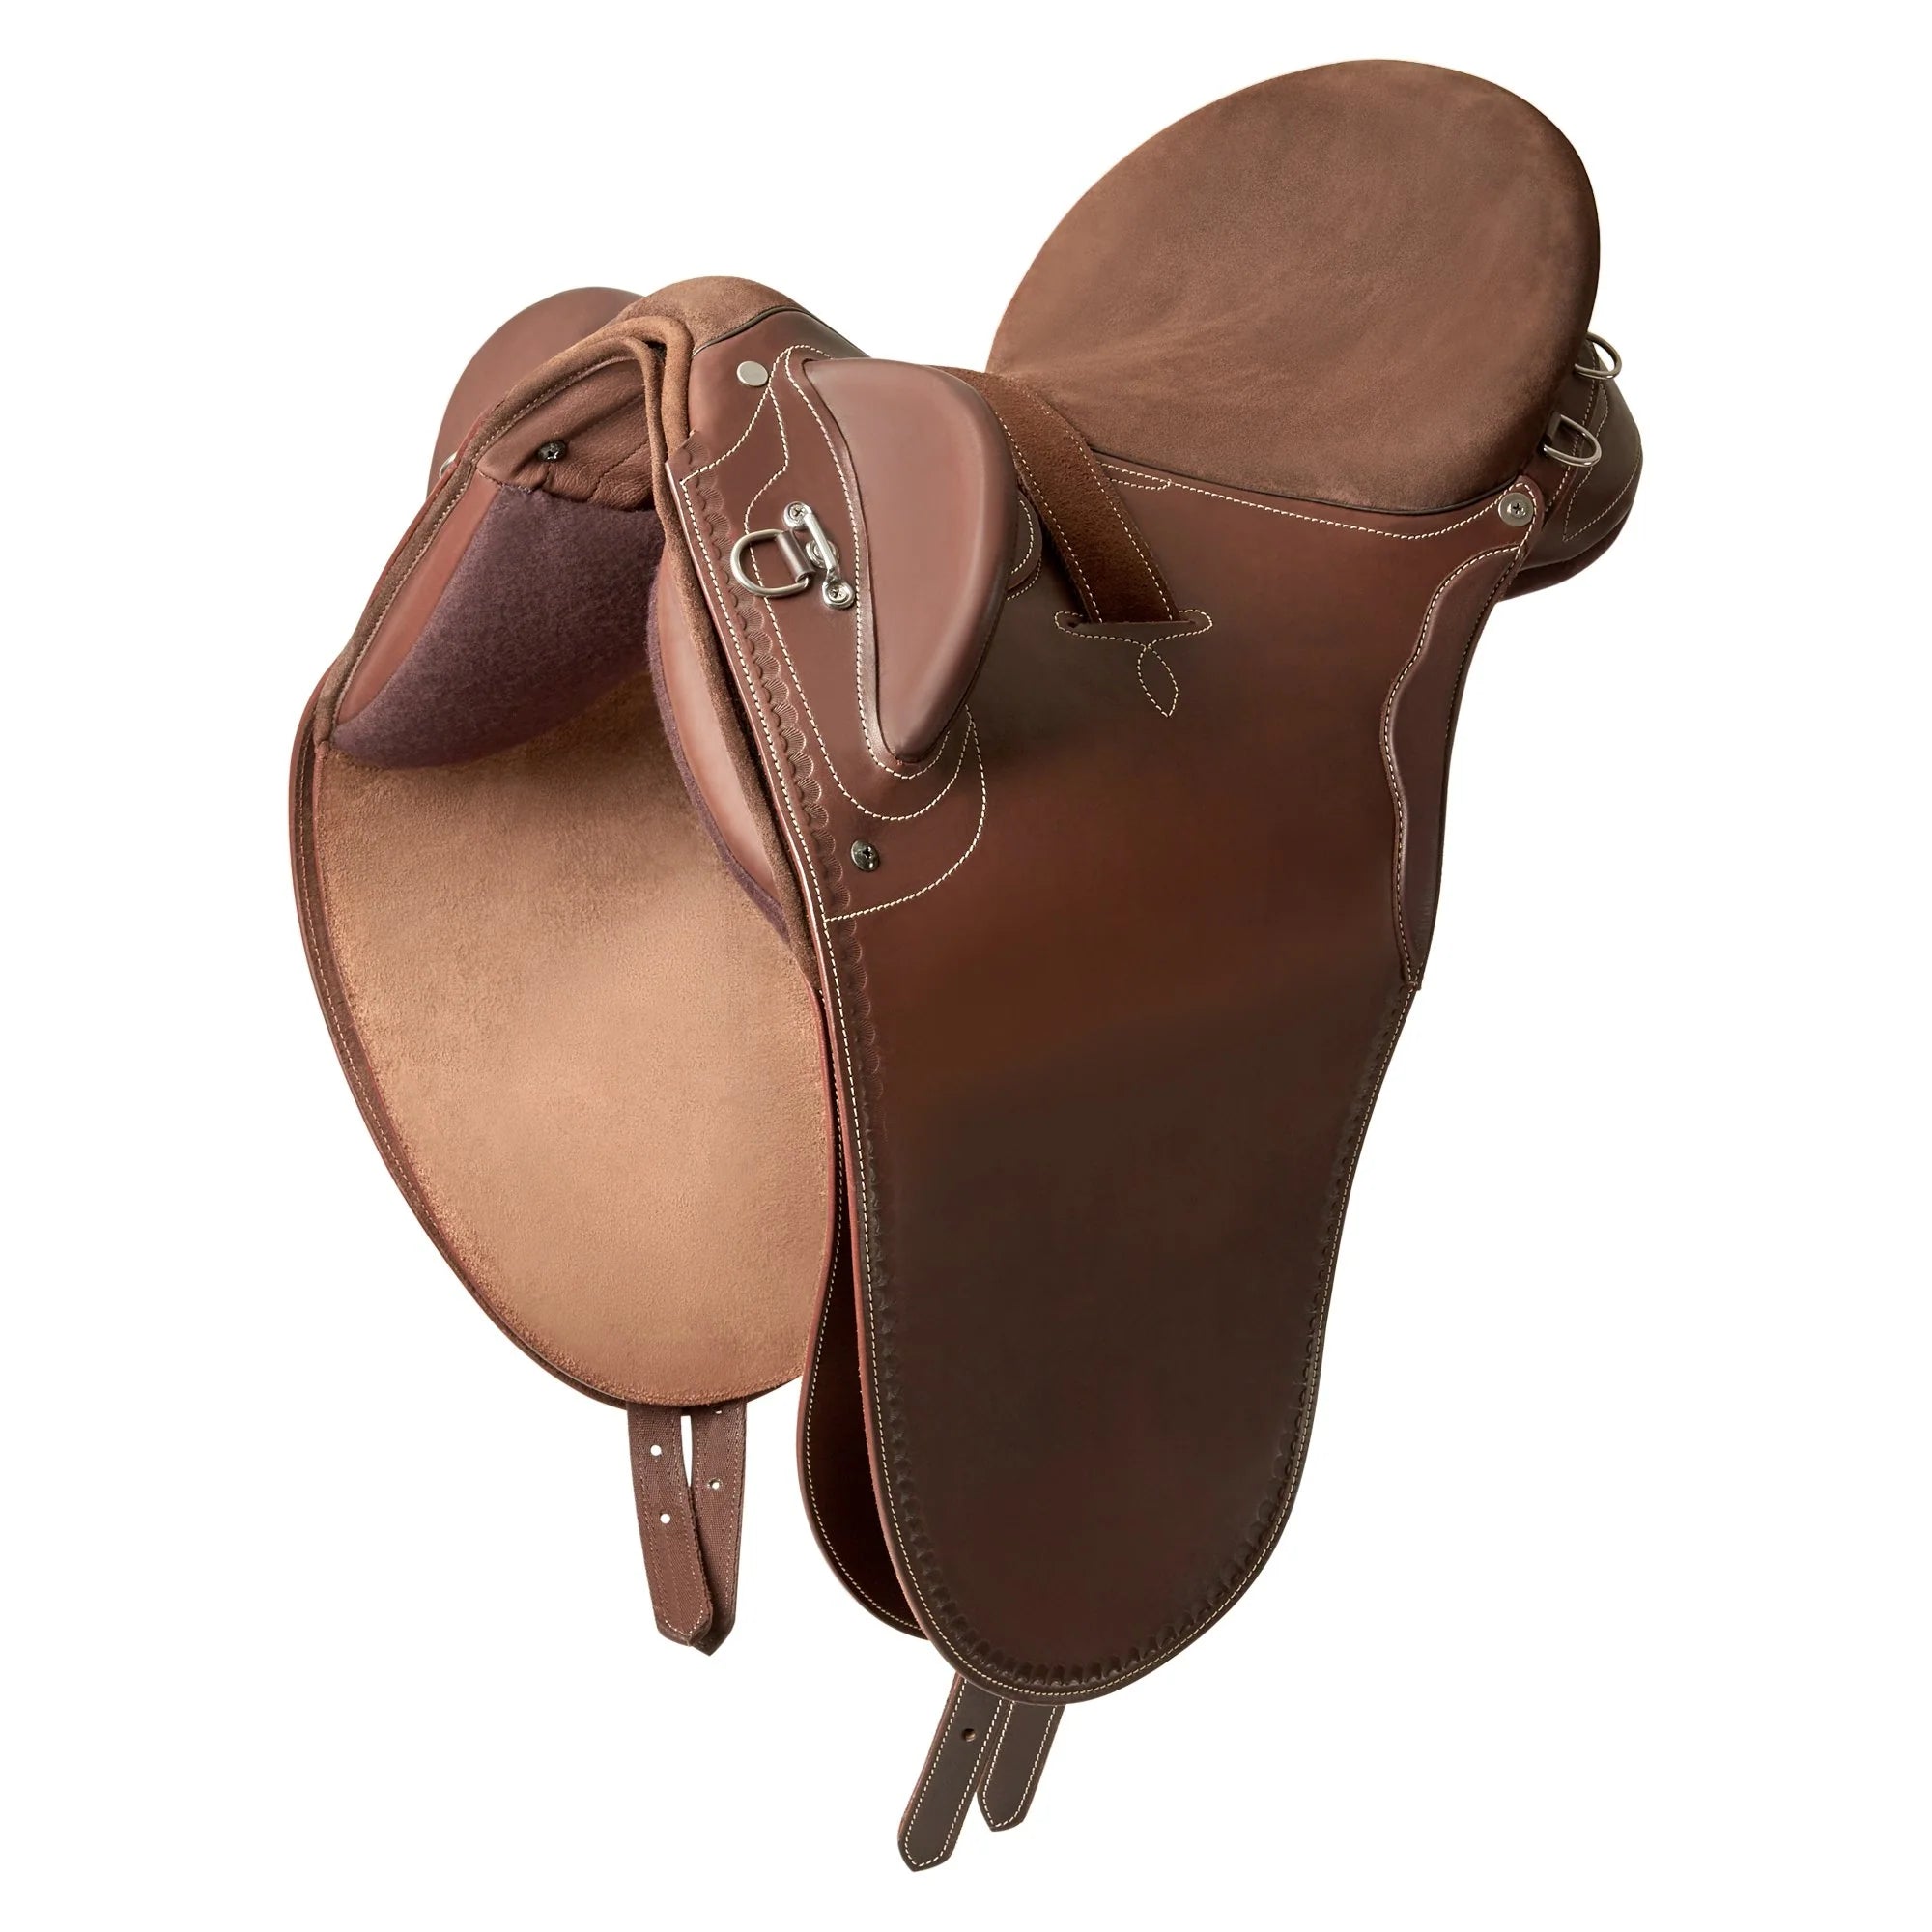 Syd Hill Premium Leather Adjustable Tree Stock Saddle